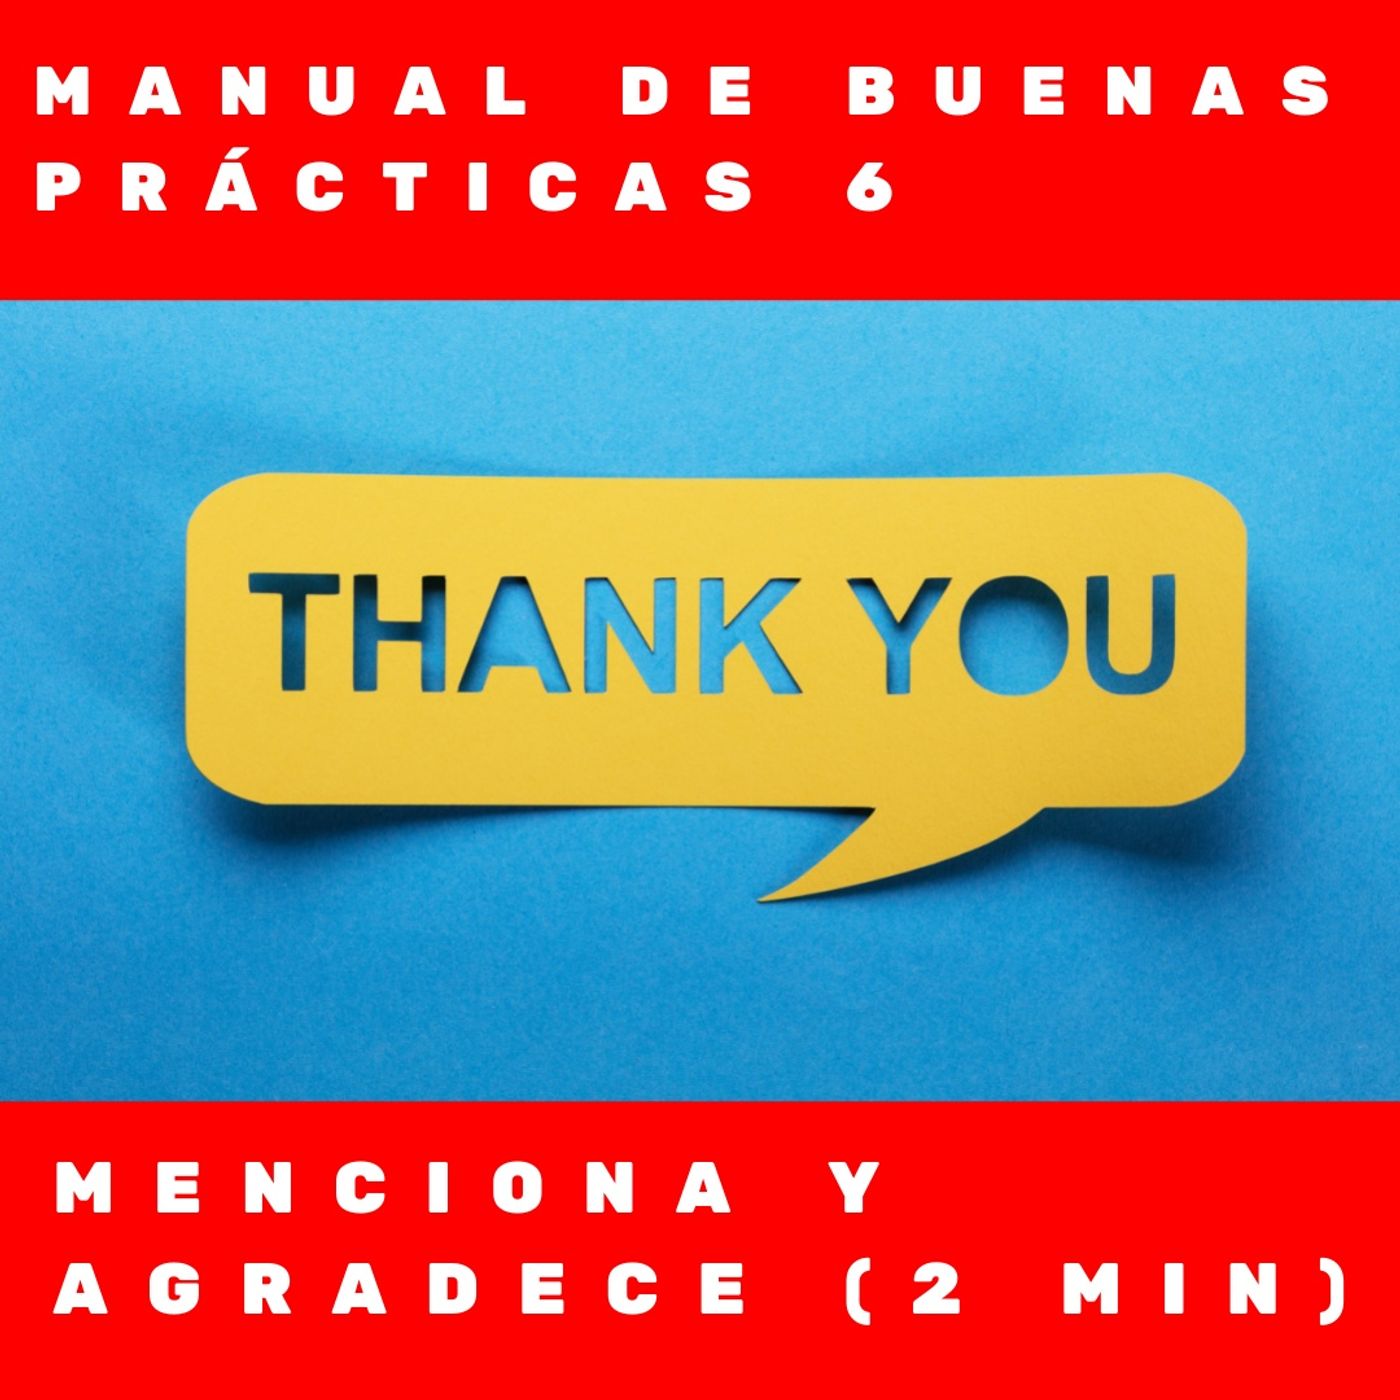 Manual de buenas prácticas 6- Menciona y agradece